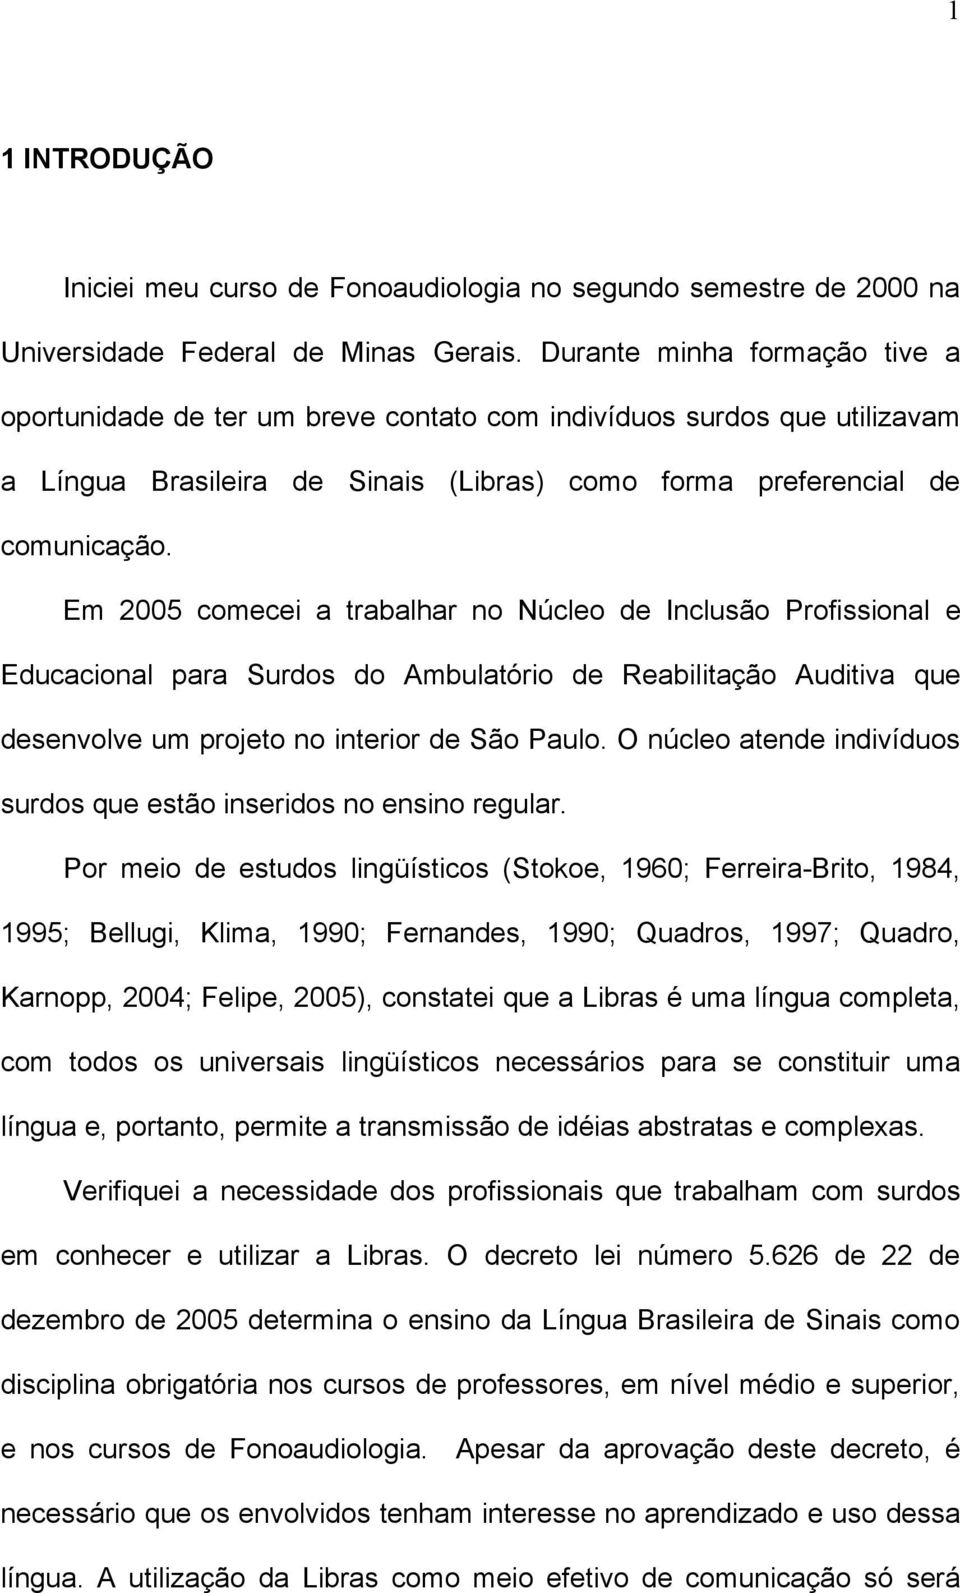 Em 2005 comecei a trabalhar no Núcleo de Inclusão Profissional e Educacional para Surdos do Ambulatório de Reabilitação Auditiva que desenvolve um projeto no interior de São Paulo.